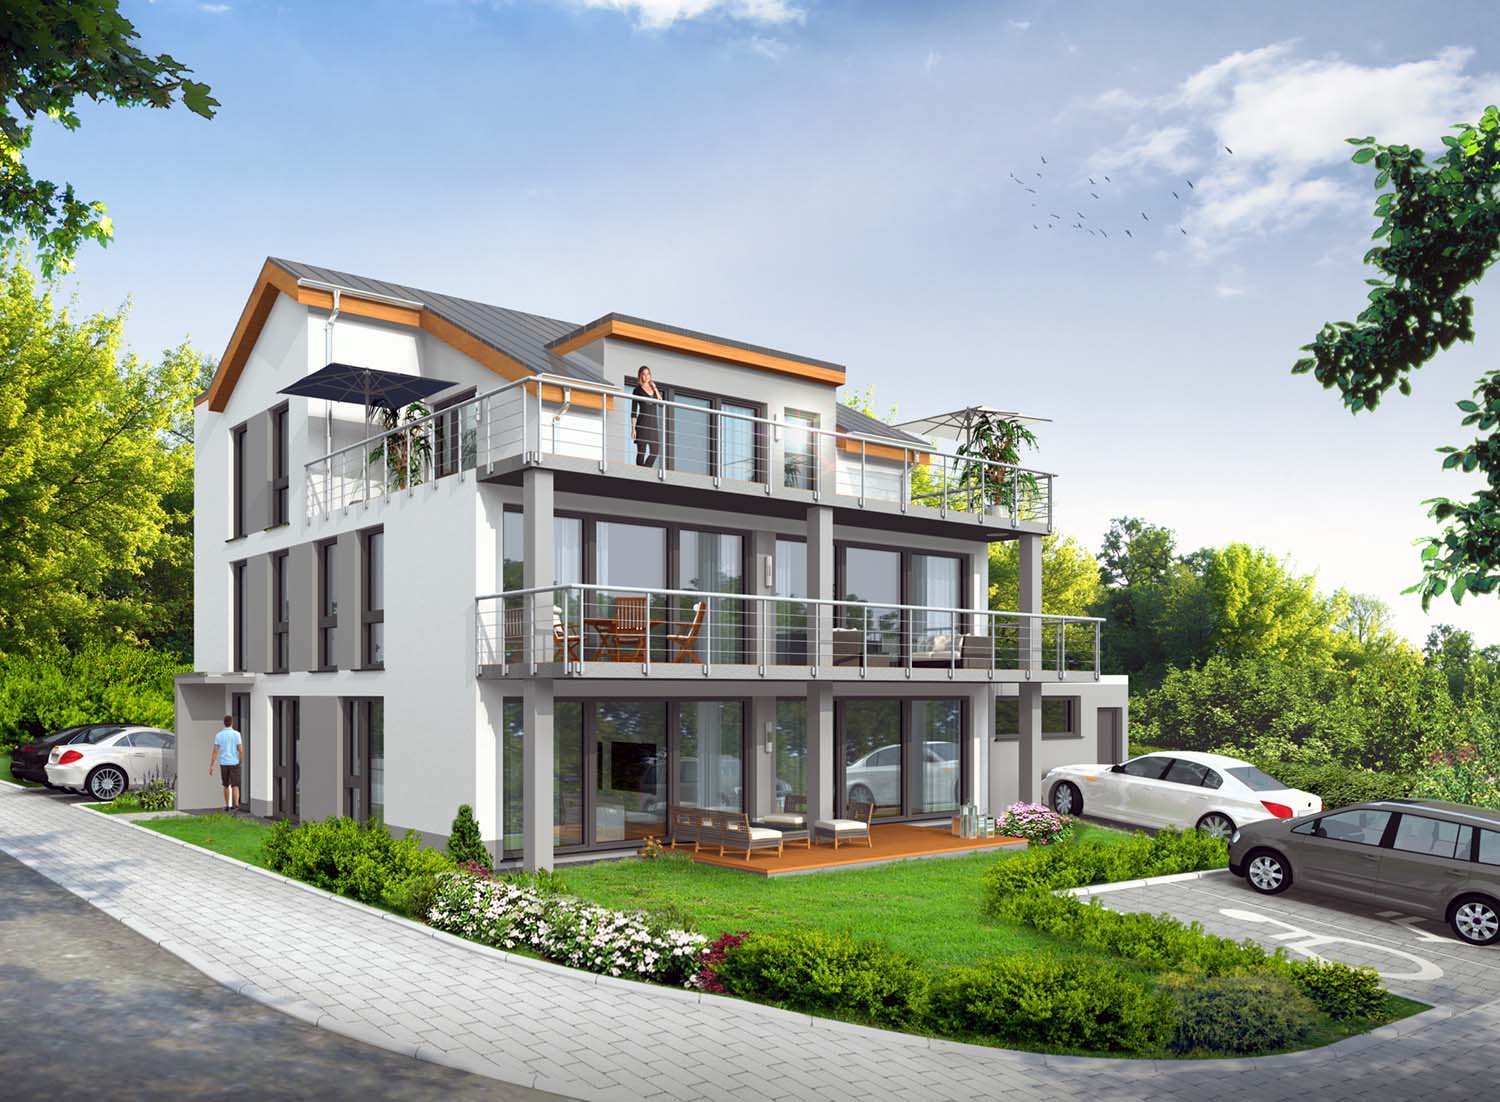 3D - Architektur Visualisierung Terrassen-/Balkonenseite Neubau Mehrfamilienhaus in Oestrich-Winkel für Arora UG / Frankfurt a. Main (Jahr 2020)